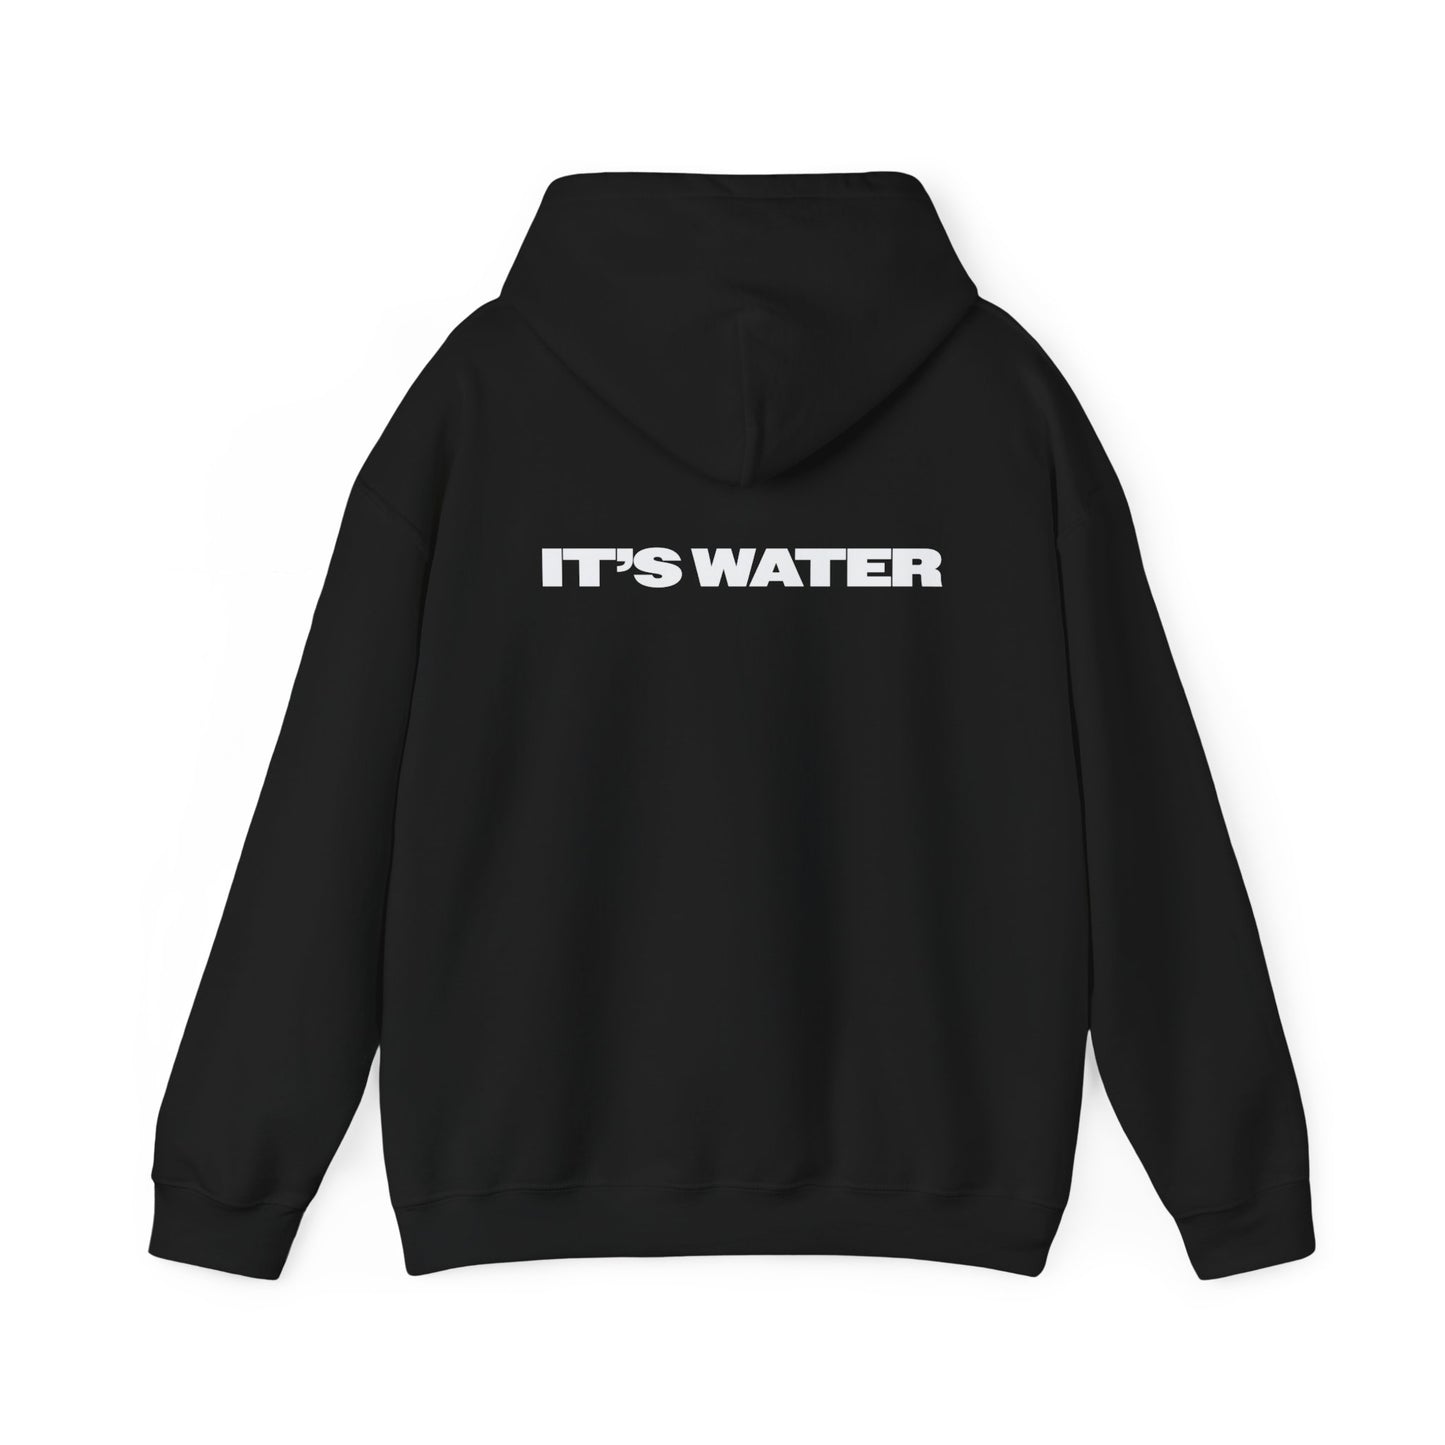 Unisex Heavy Blend™ Hooded Sweatshirt - Tall Boy Water